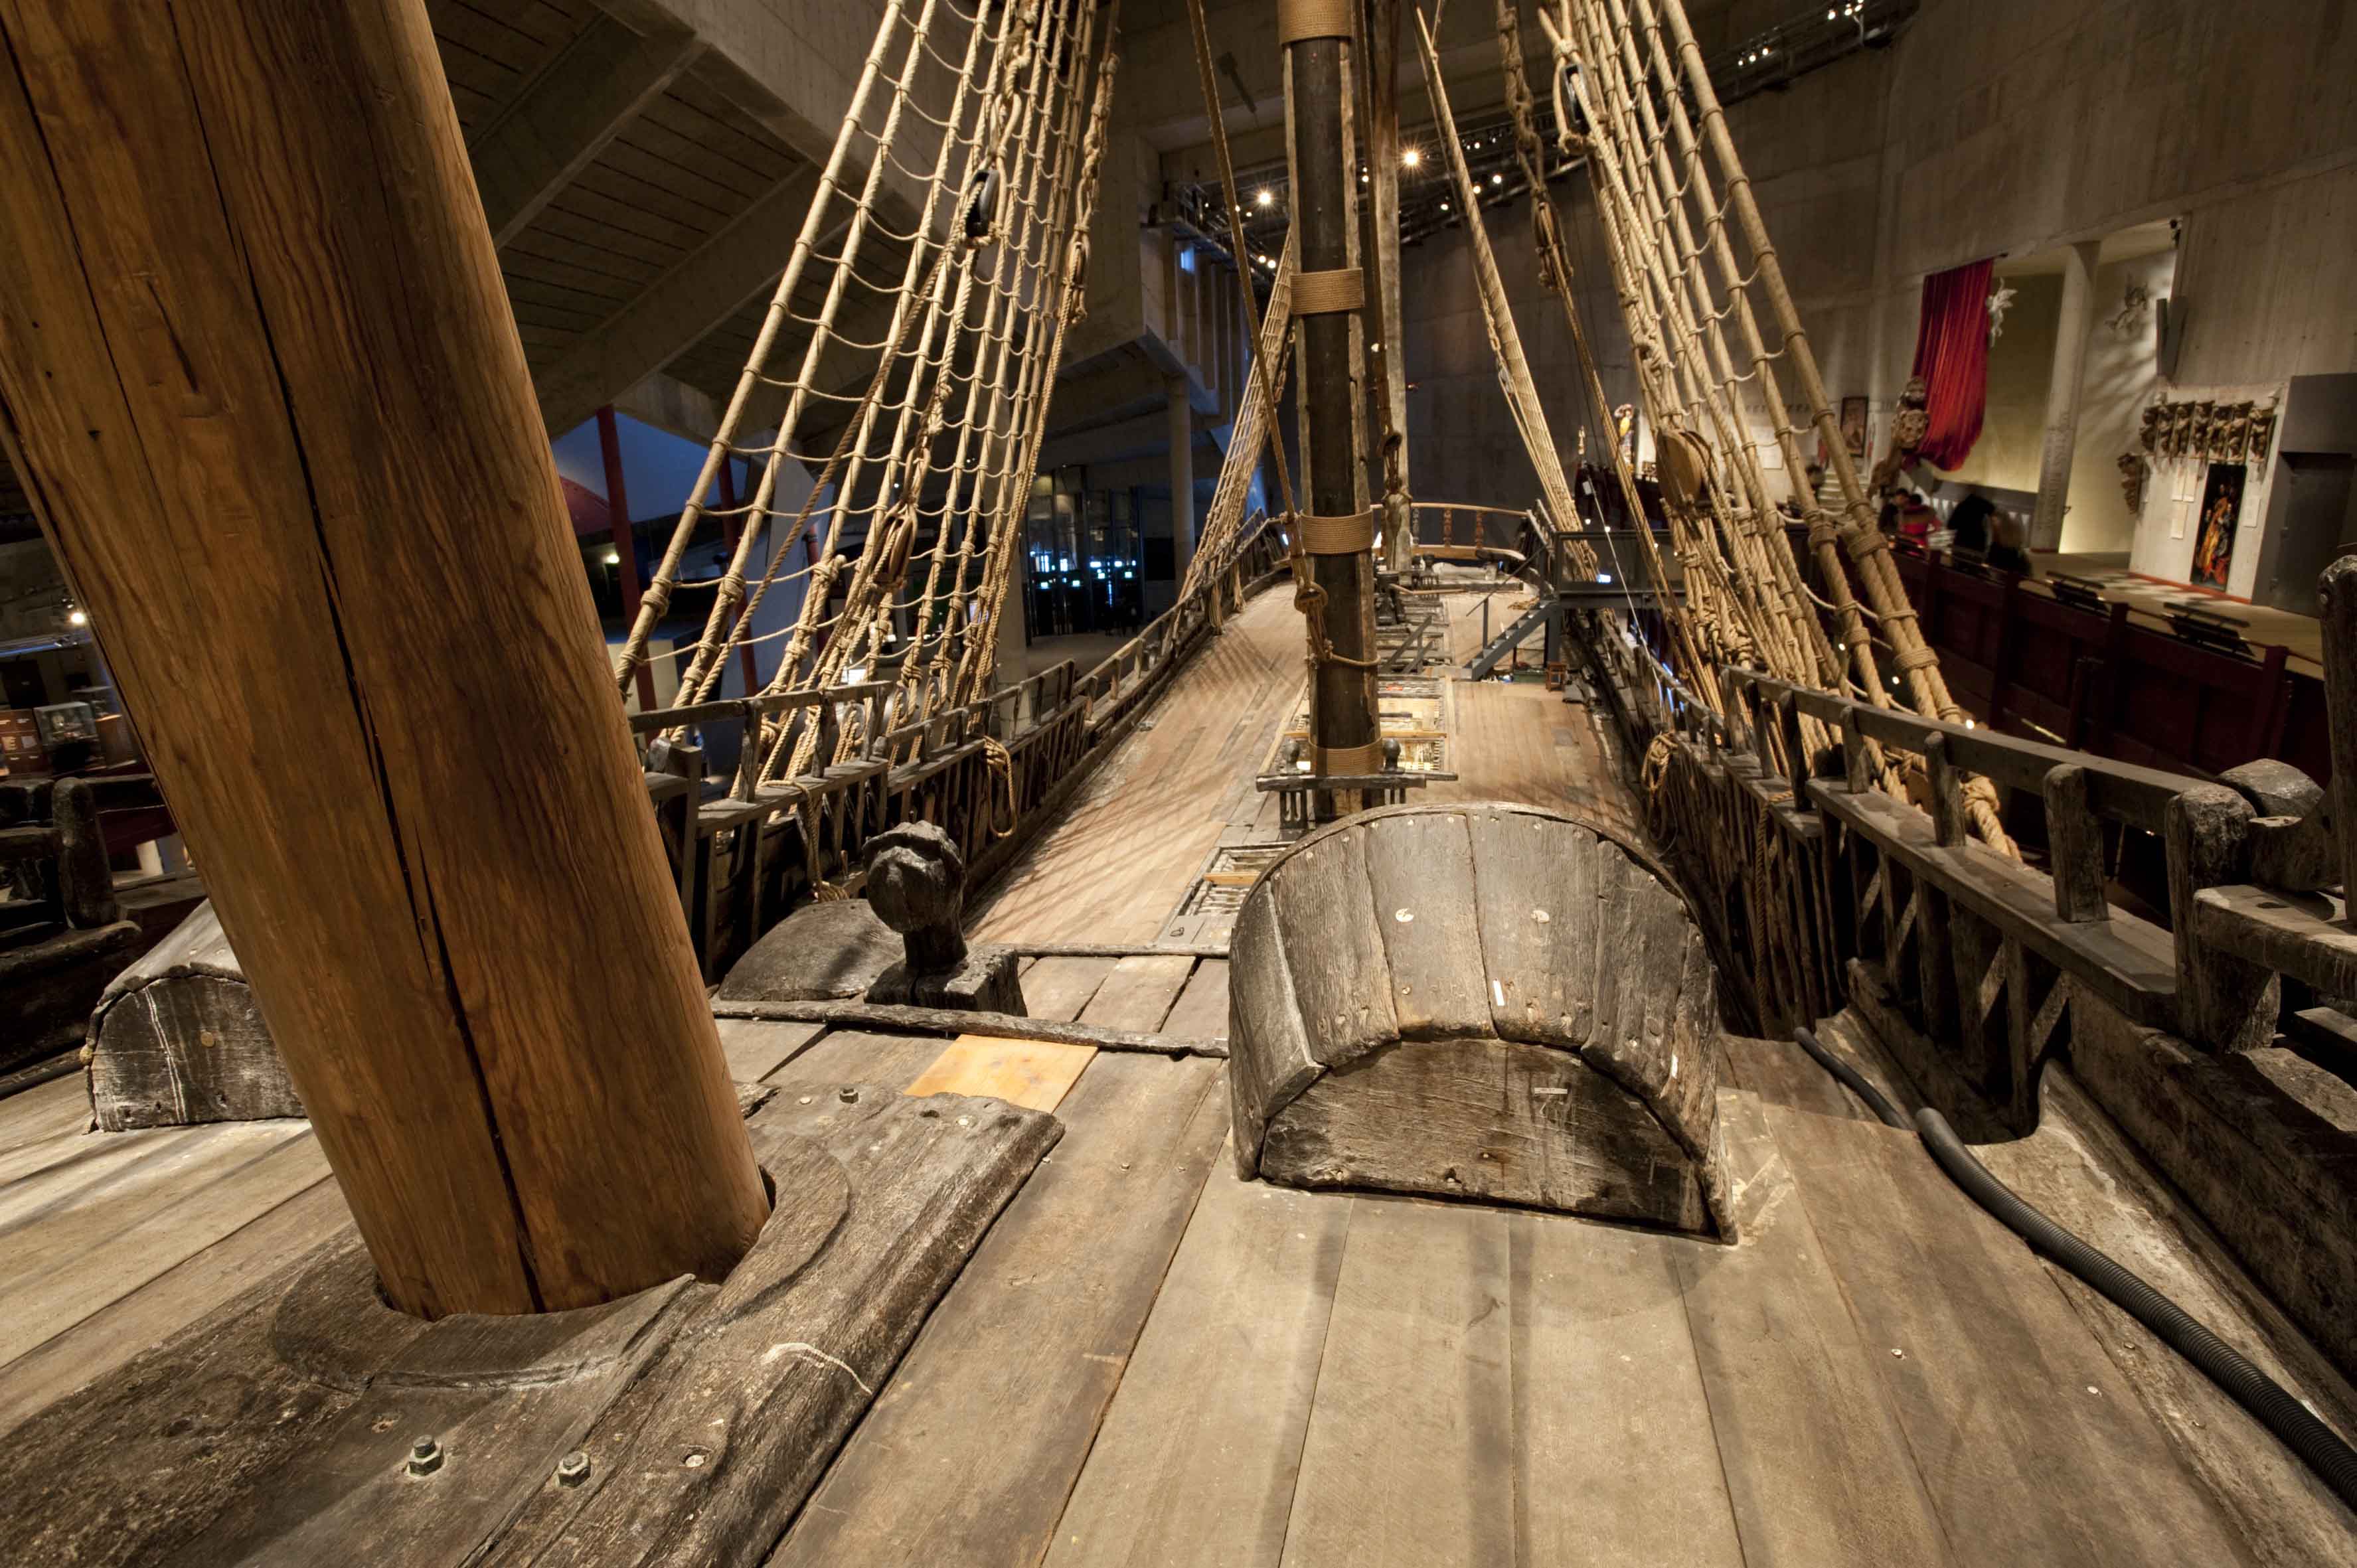 Между палубами. В трюме корабля Васа. Корабль vasa внутри. Капитанская каюта пиратского корабля 17 века. Палуба корабля.